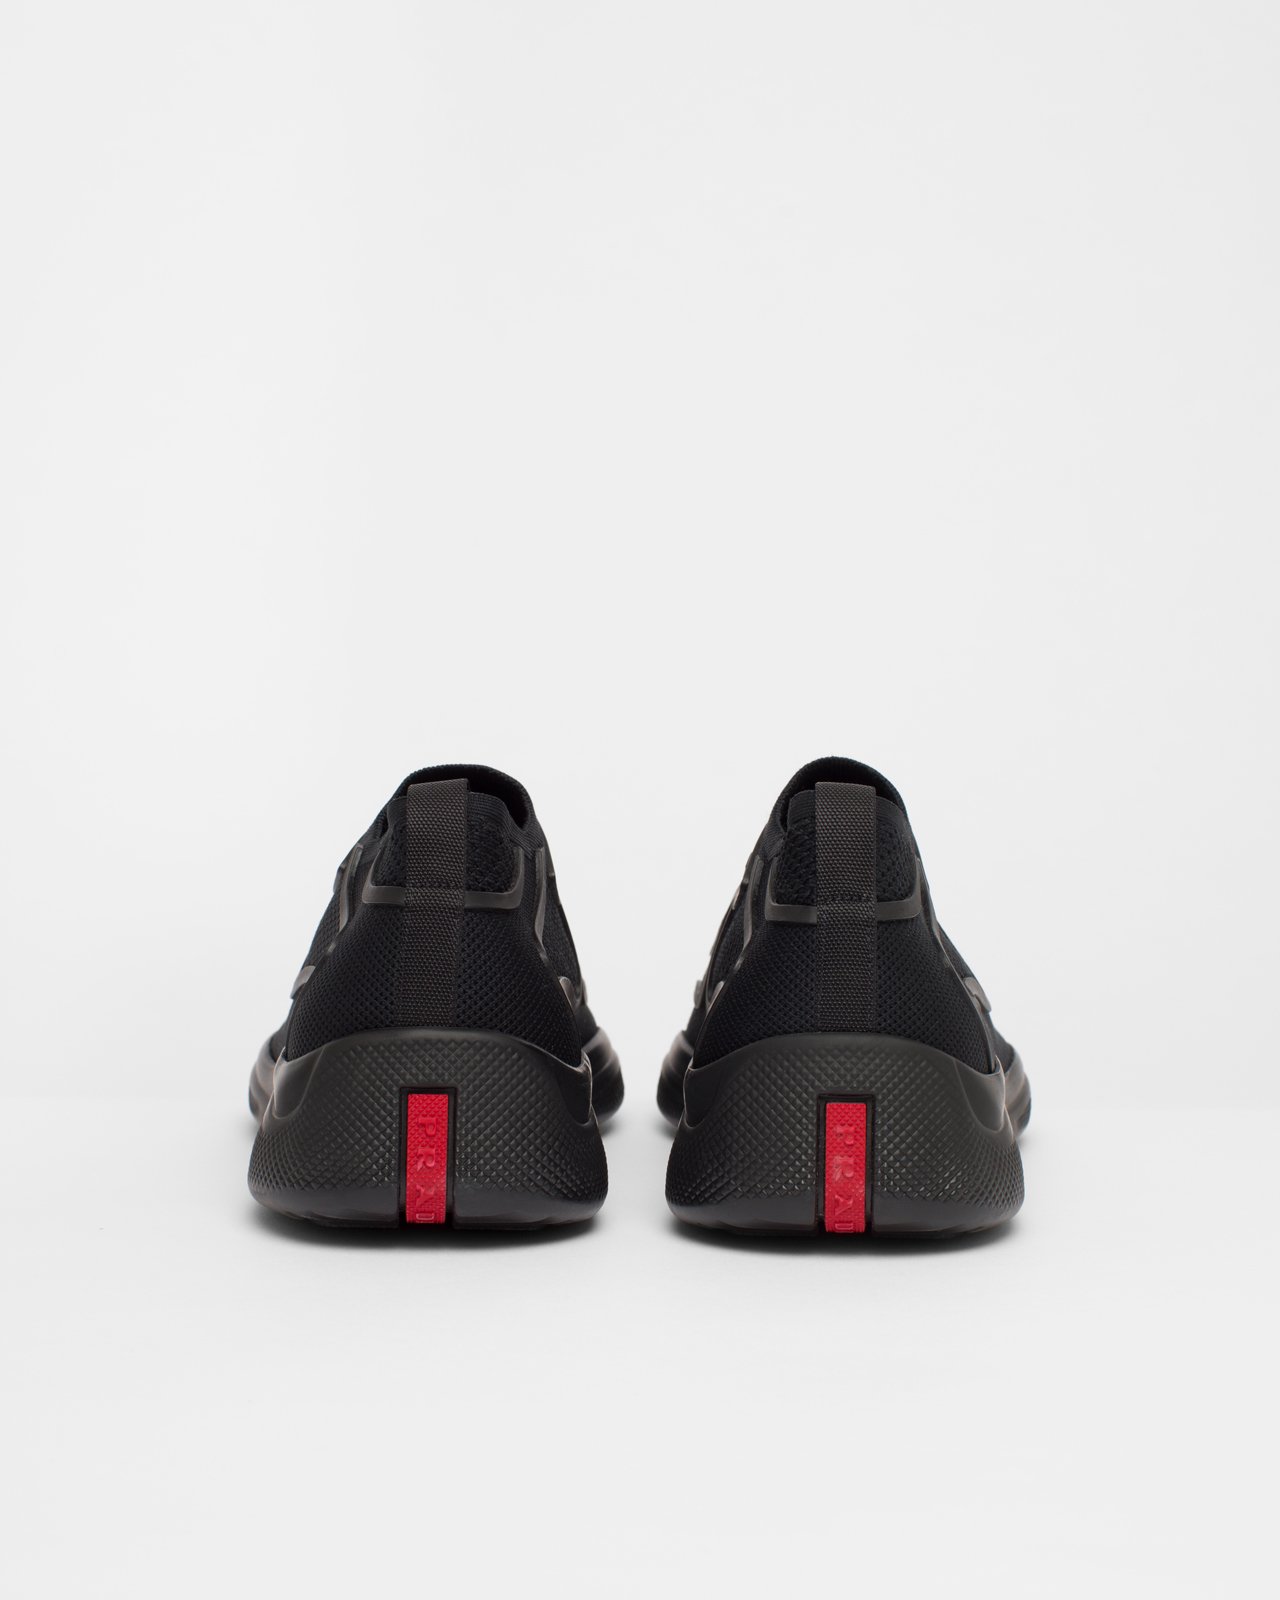 Prada - Men's Americas Cup Knit Slip-On - Footwear - Black - Image 6